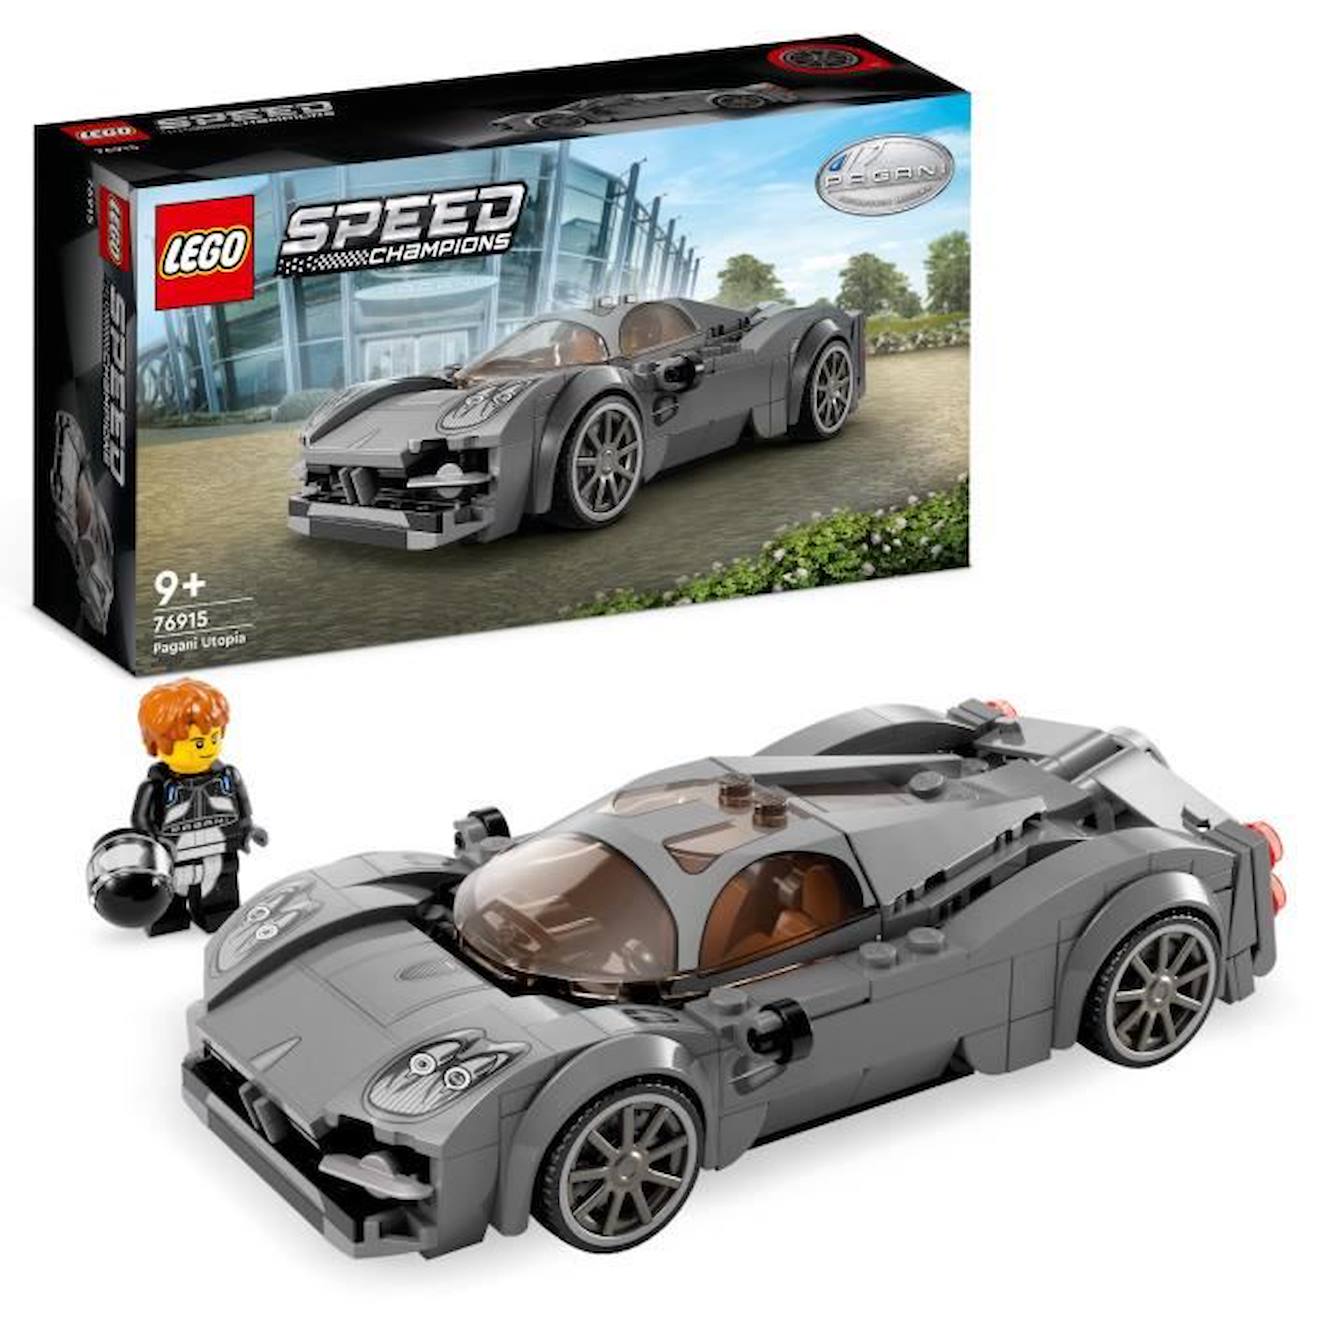 Lego® Speed Champions 76915 Pagani Utopia, Jouet Voiture De Course, Kit De Maquette De Collection Gr